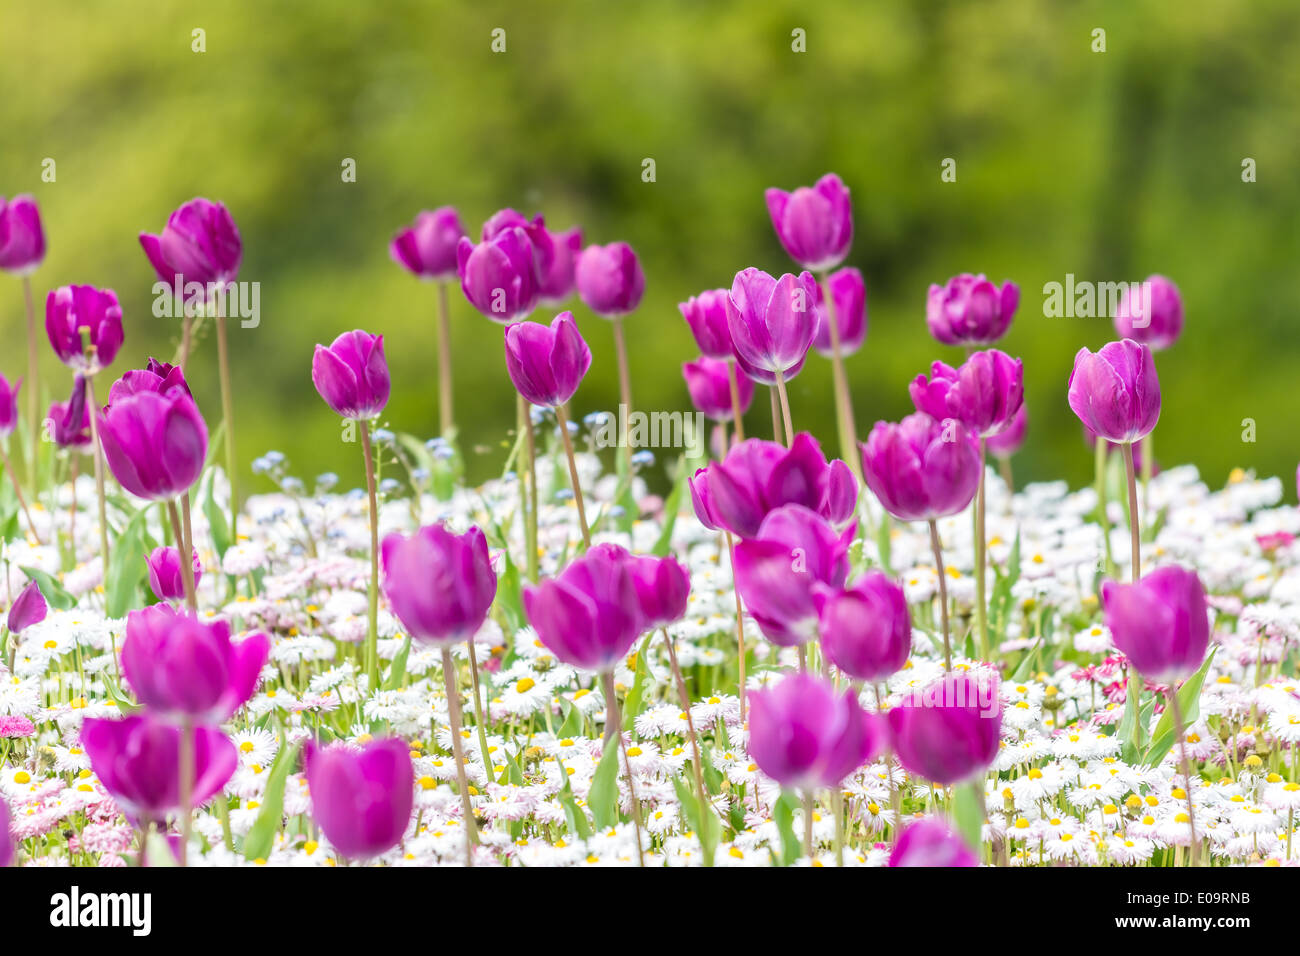 Tulipes violet et blanc Marguerites Au printemps Banque D'Images